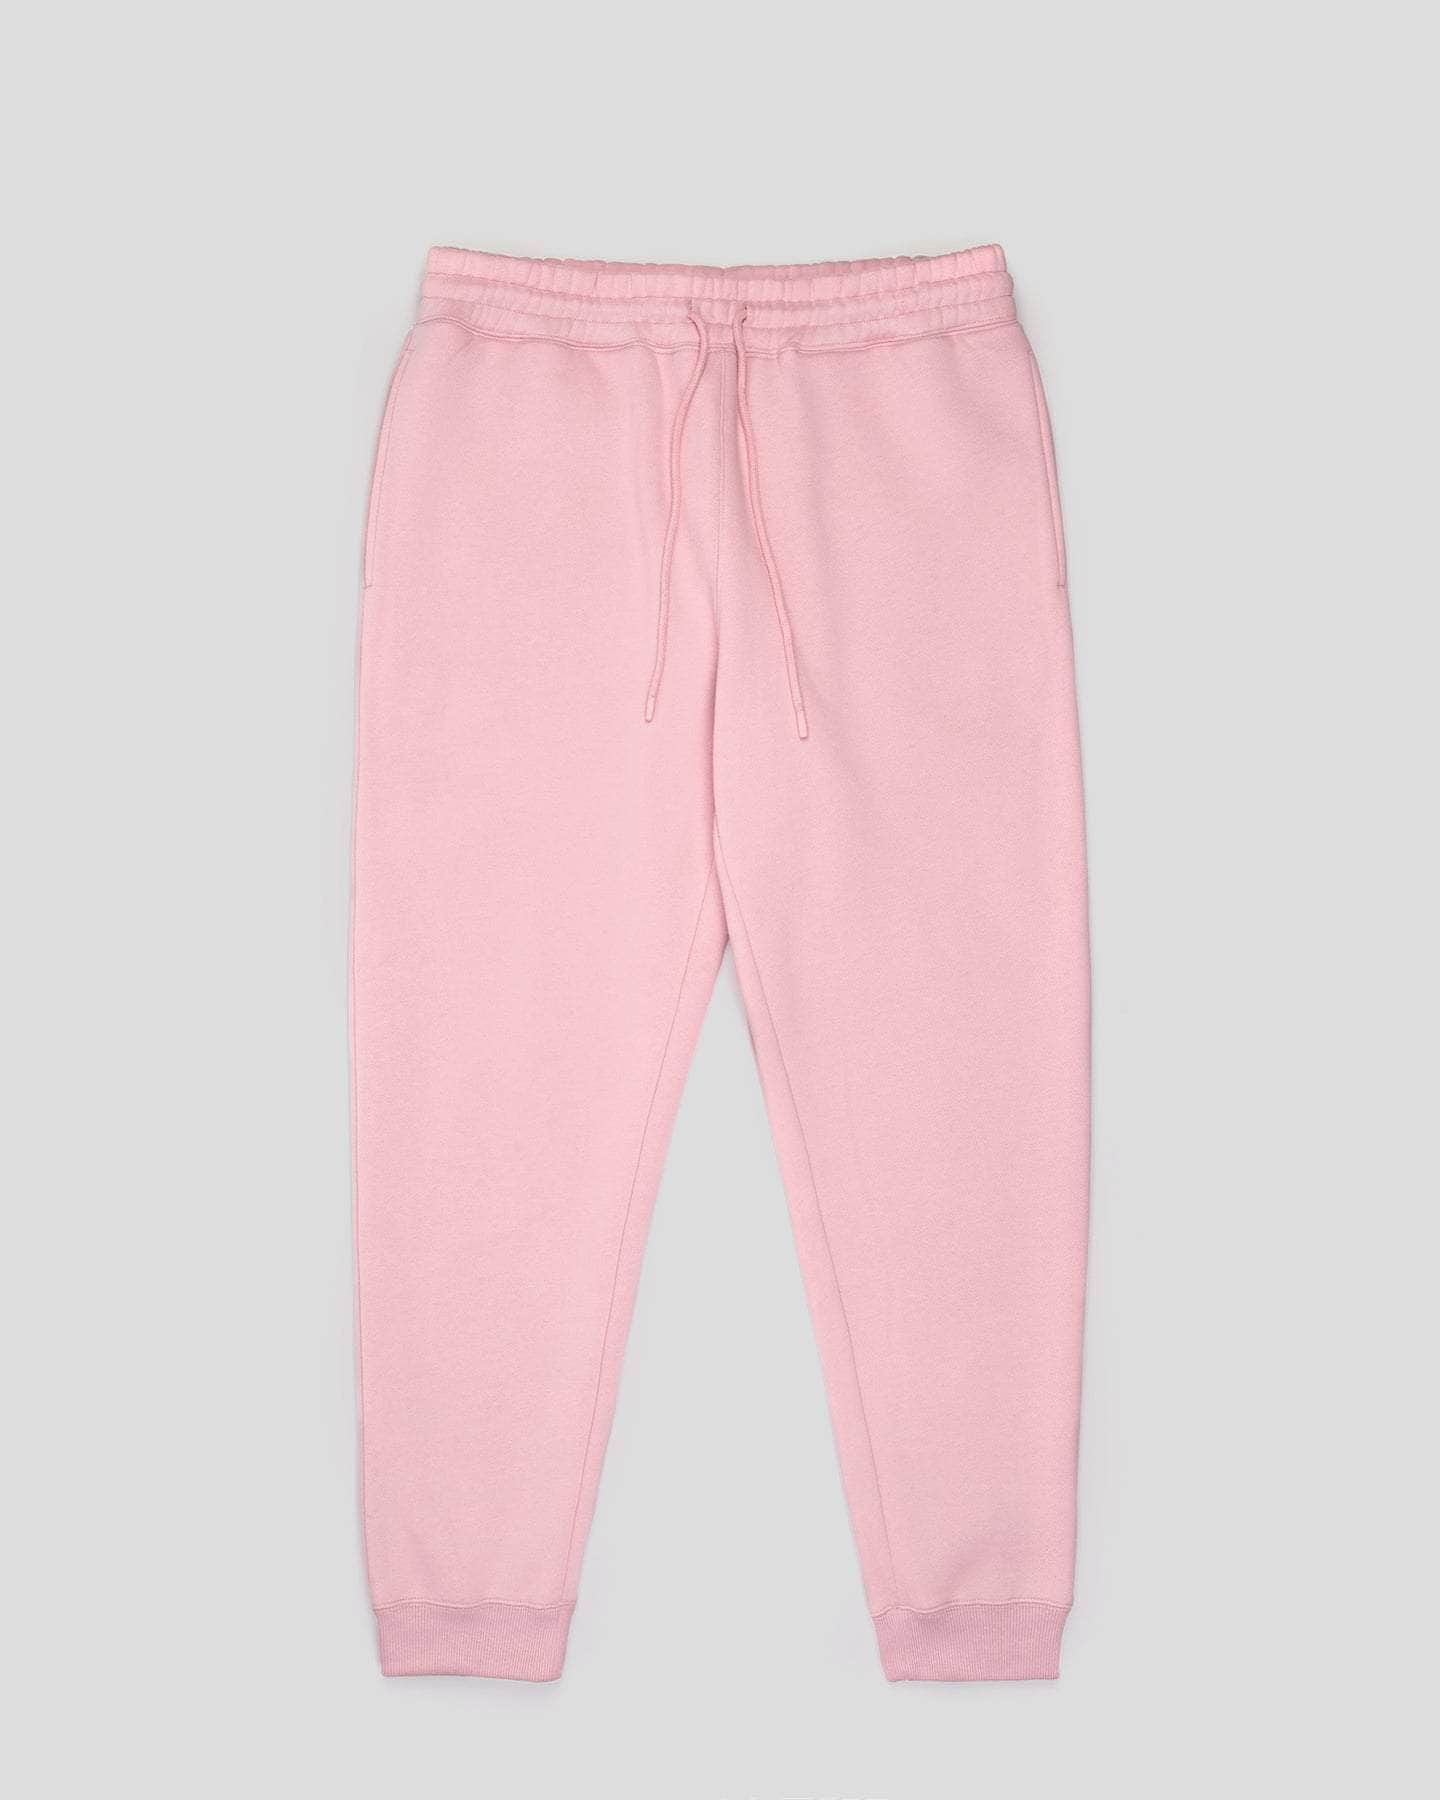 colsie Plaid Multi Color Pink Sweatpants Size XS - 47% off